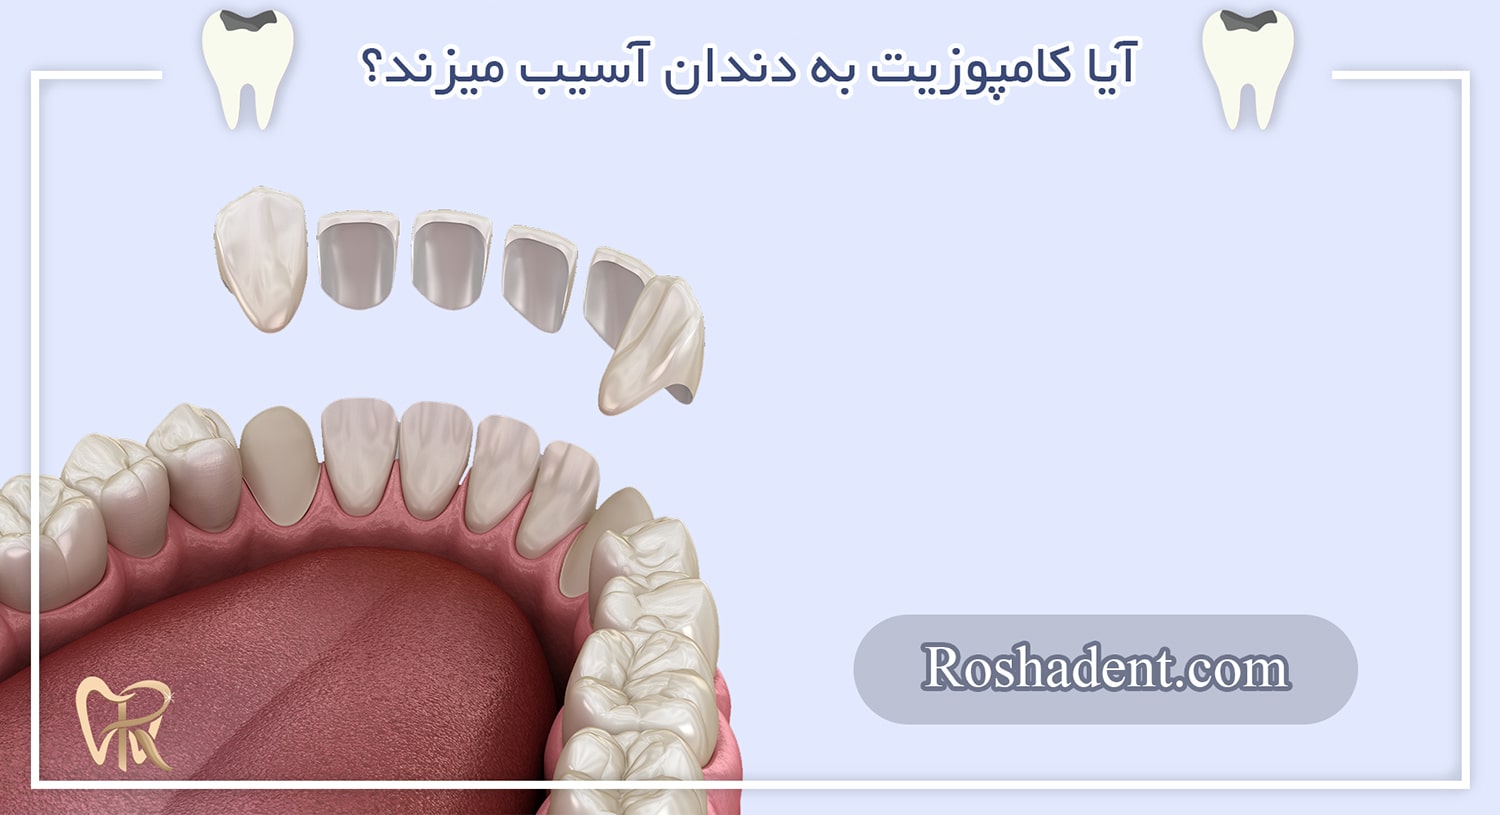 آیا کامپوزیت به دندان آسیب میزند؟